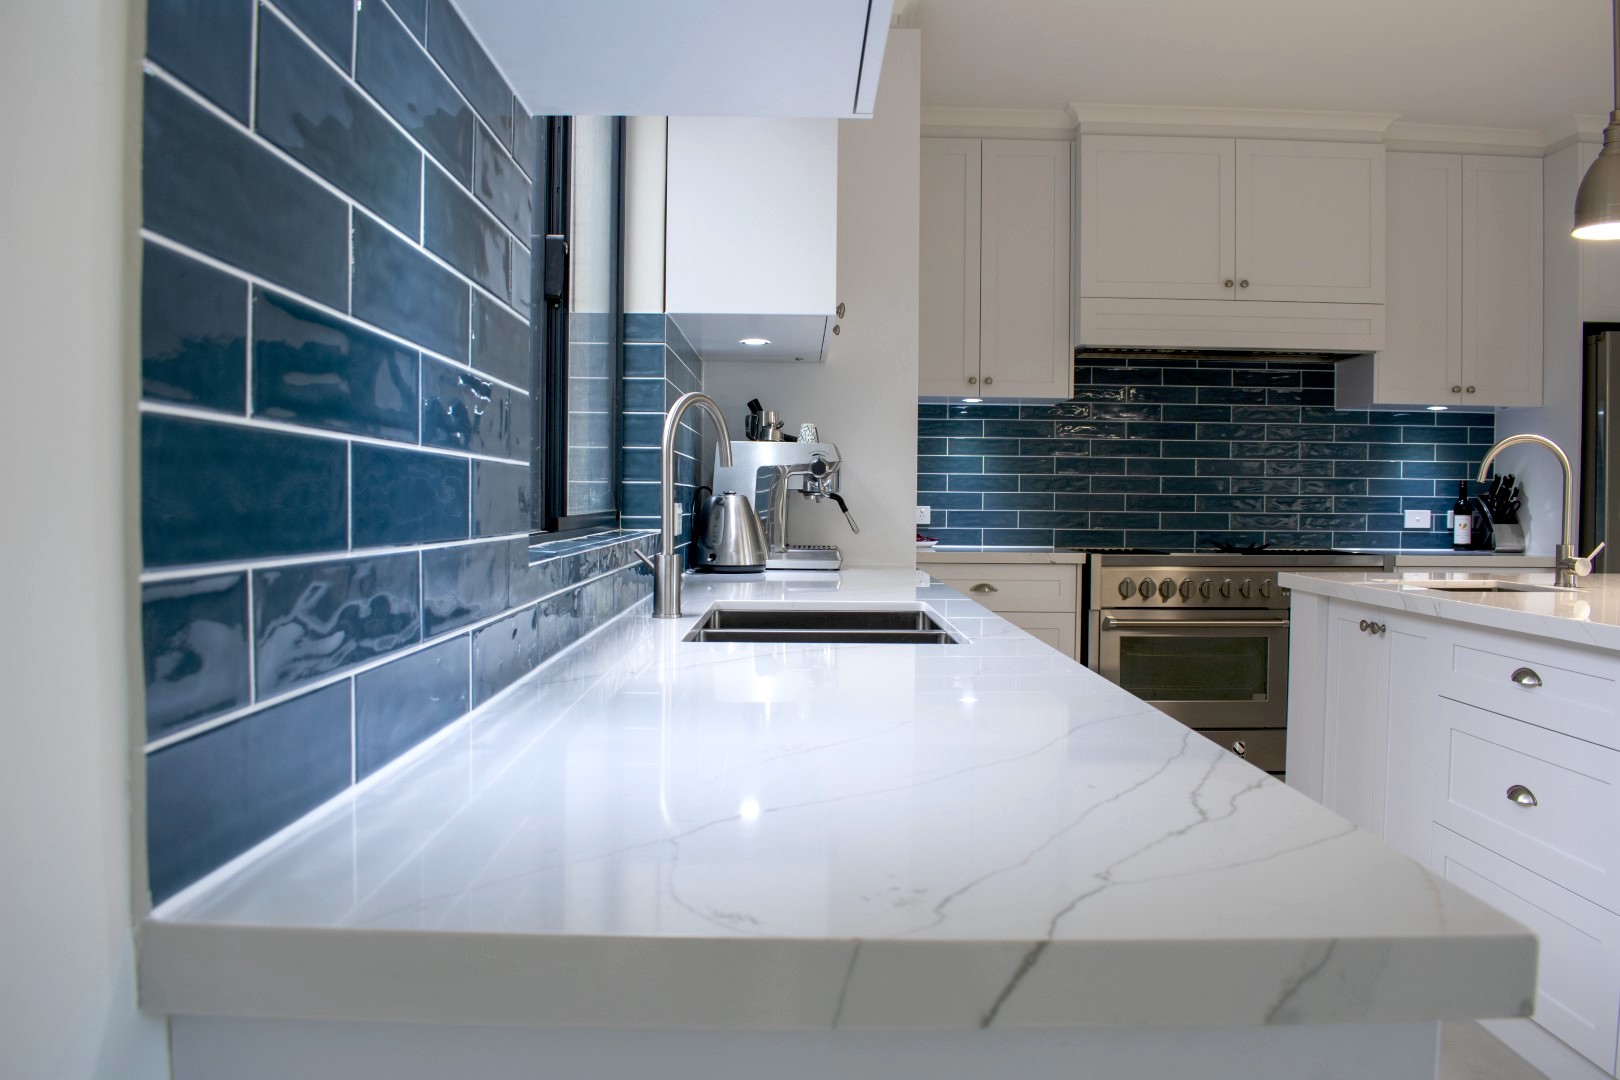 Kitchen with stylish glossy blue splashback tiles